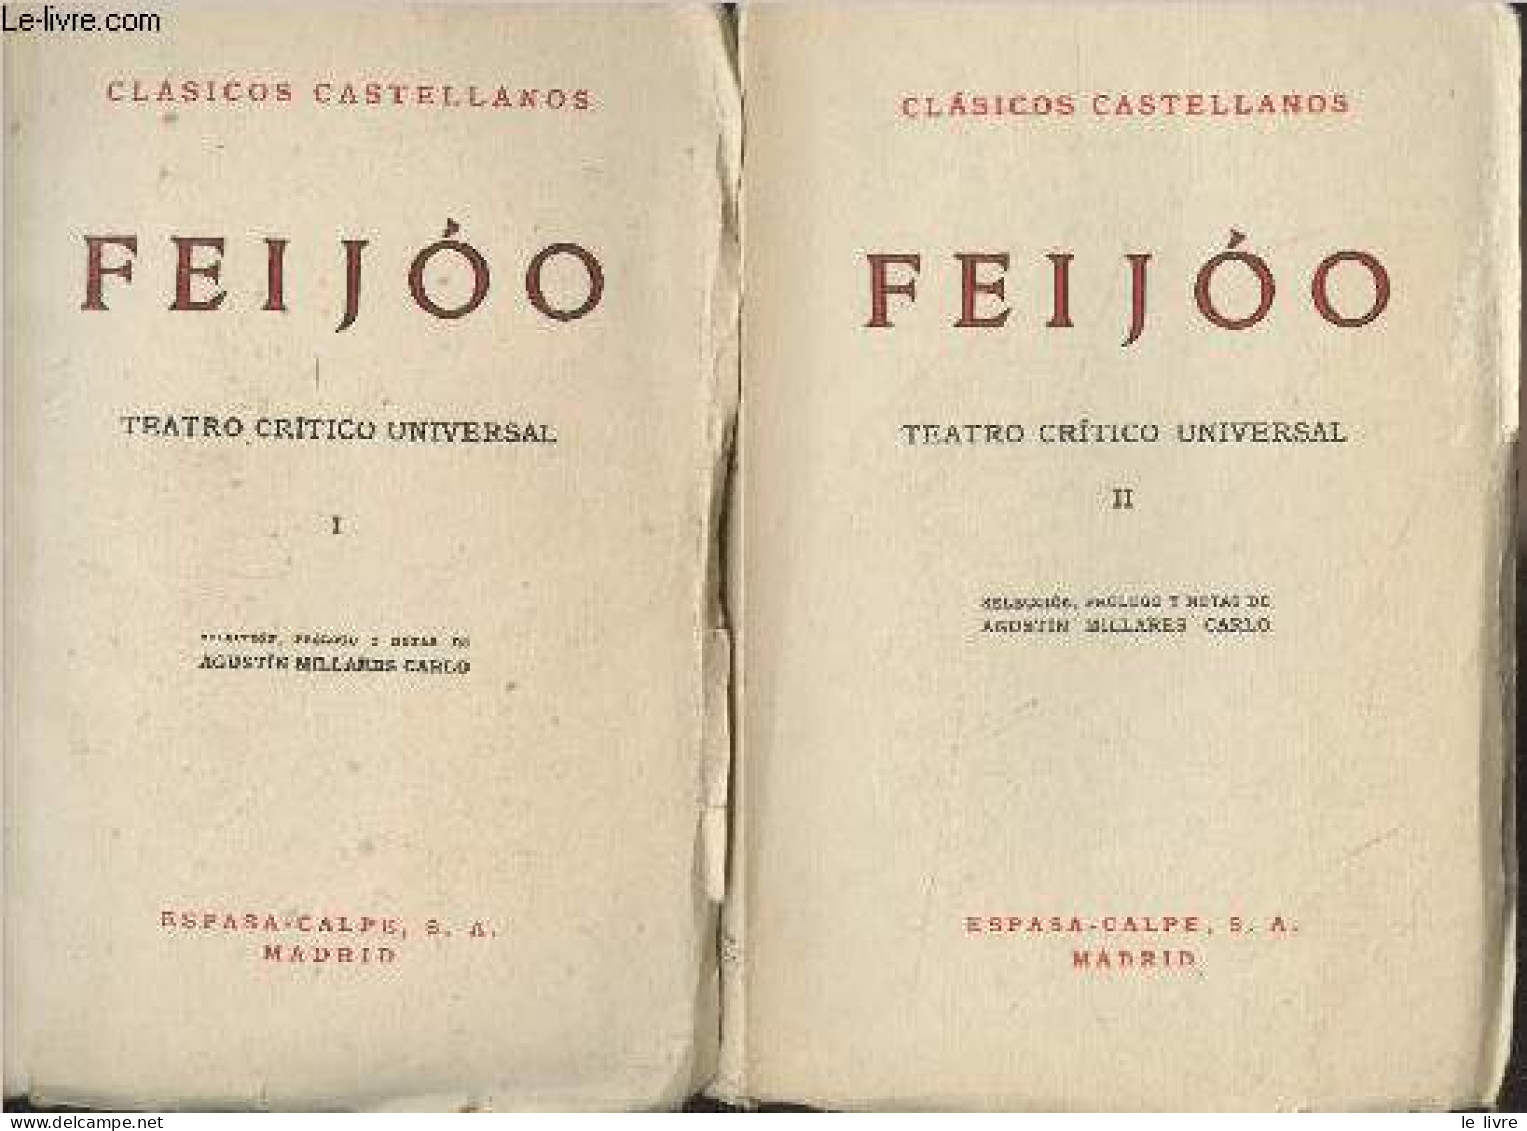 Teatro Critico Universal - III - "Clasicos Castellanos" N°48/53 - Feijoo - 1965 - Culture